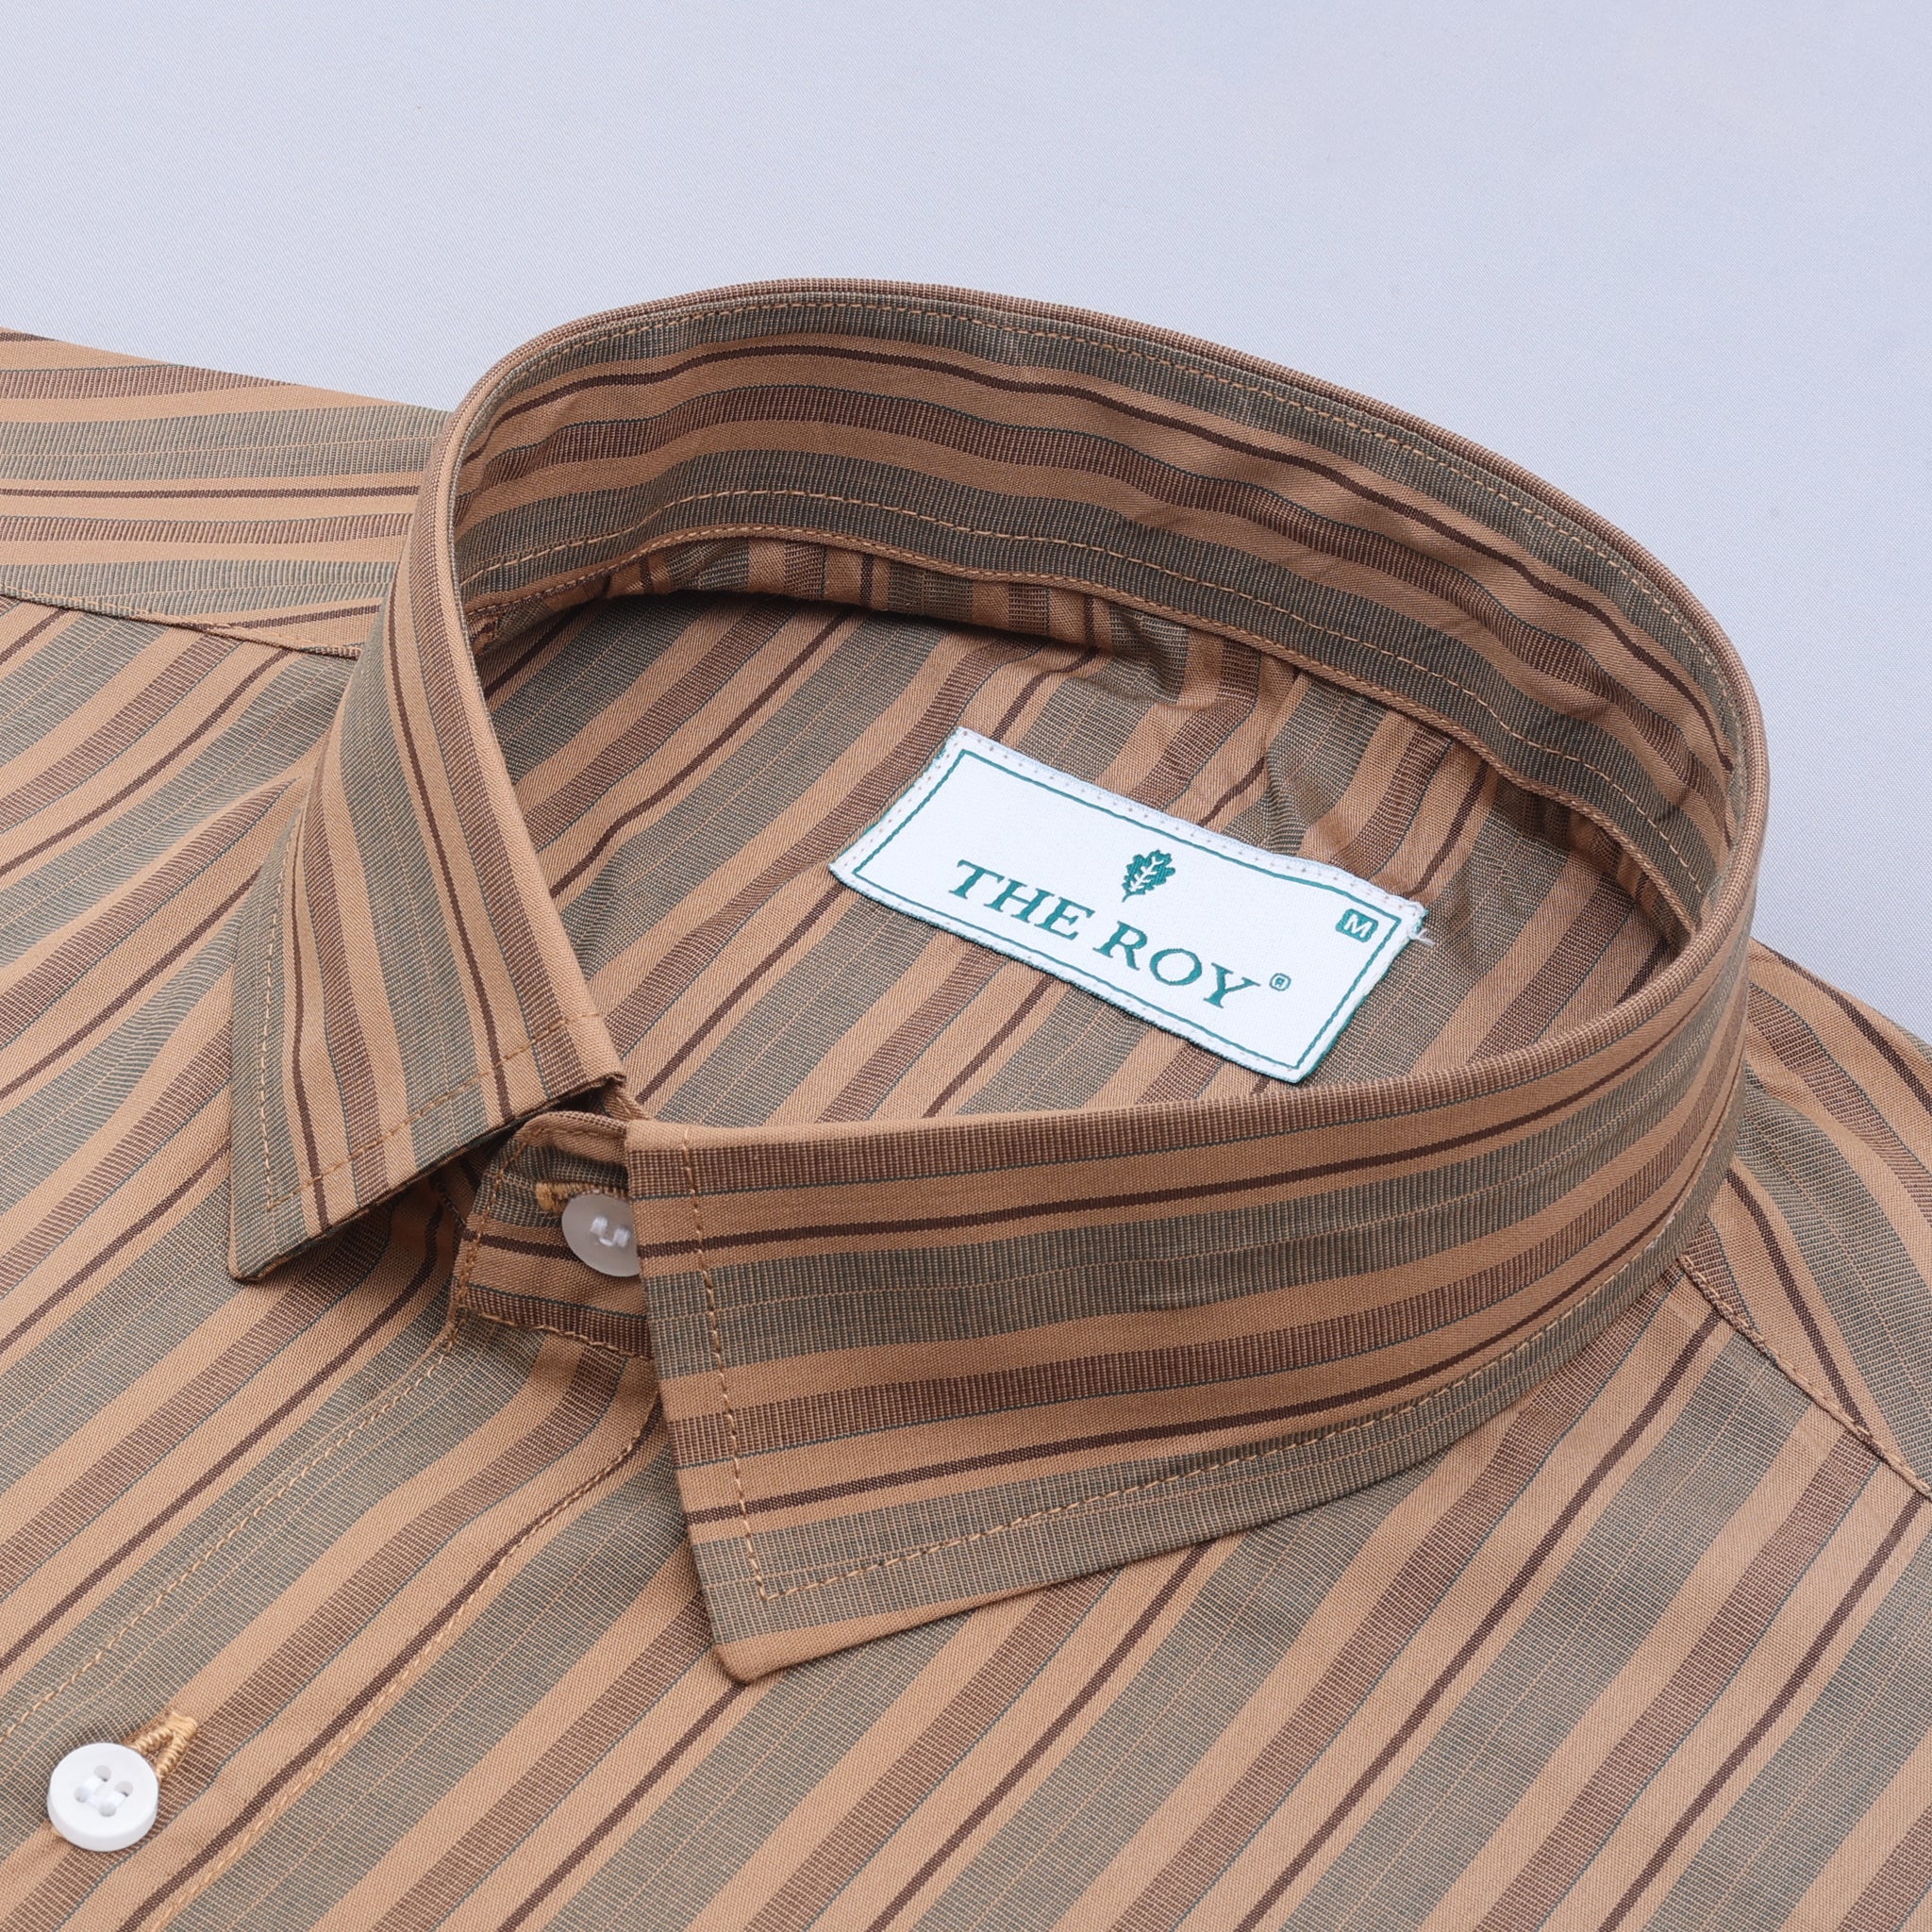 Brown Premiums Stripes Cotton Shirt